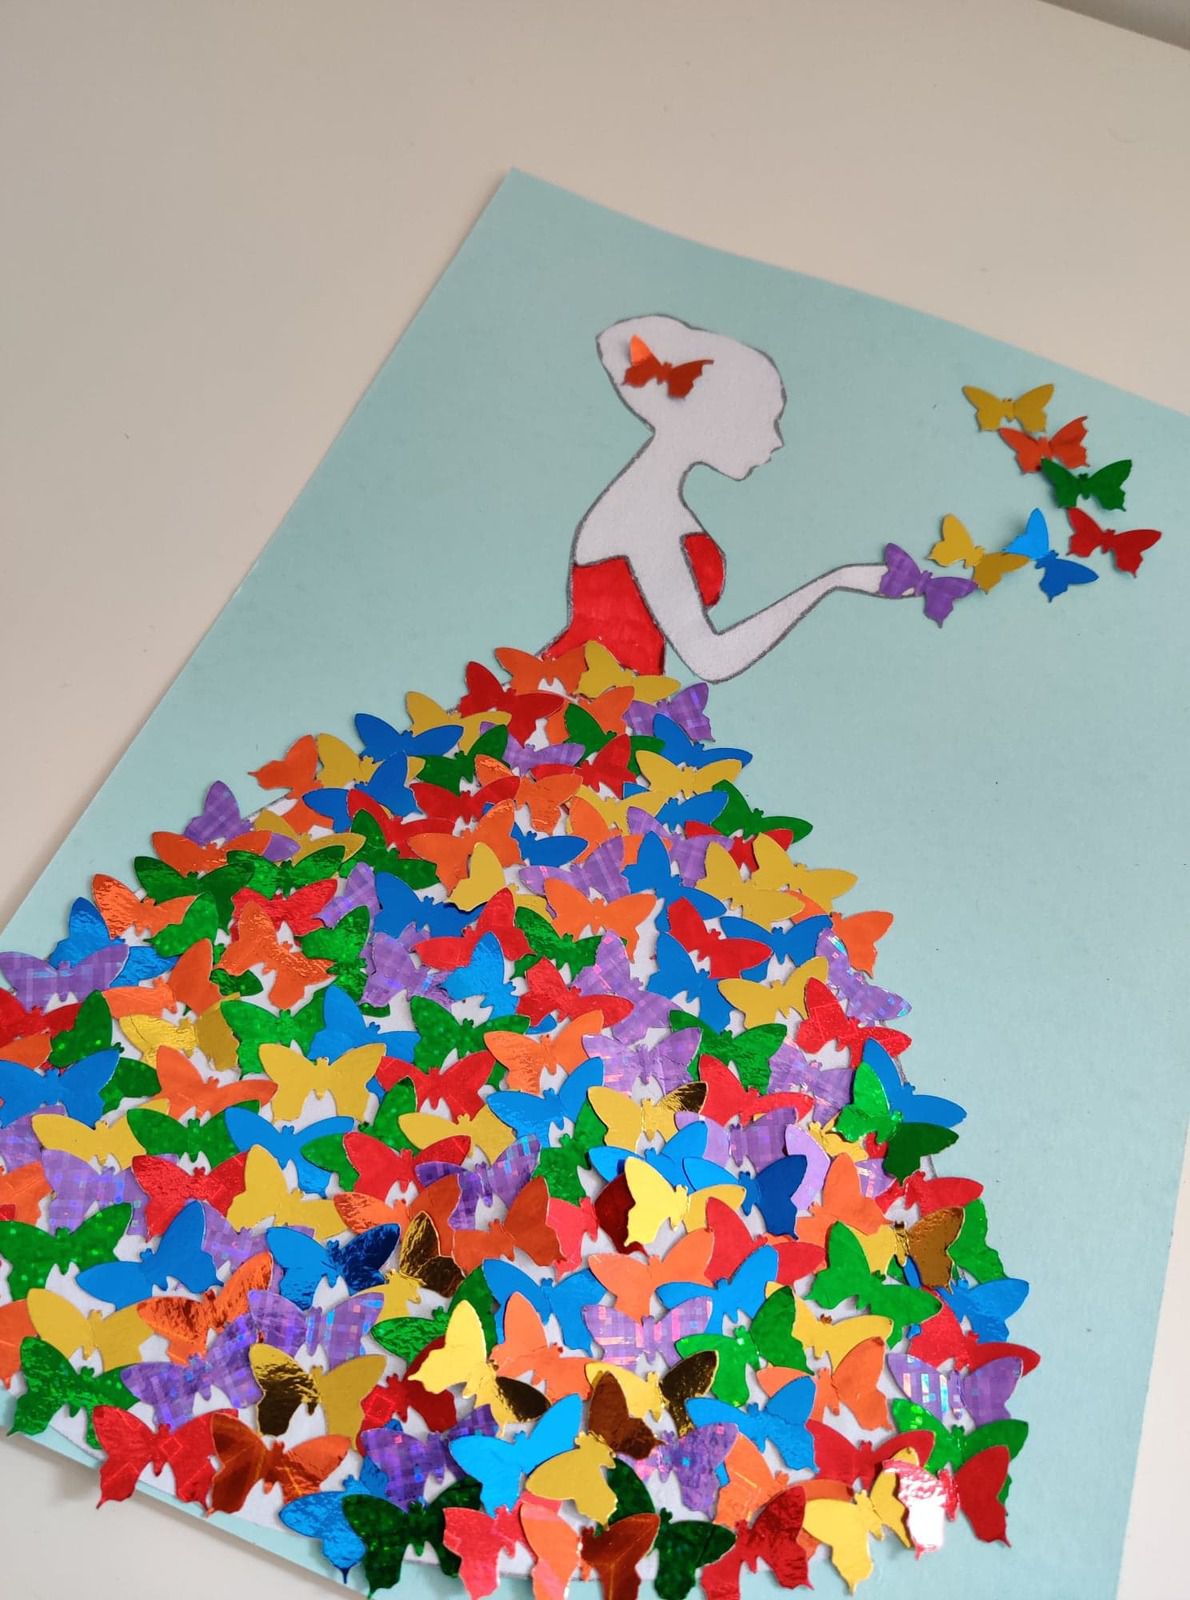 Kit créatif papillons à fabriquer pour activité manuelle enfant